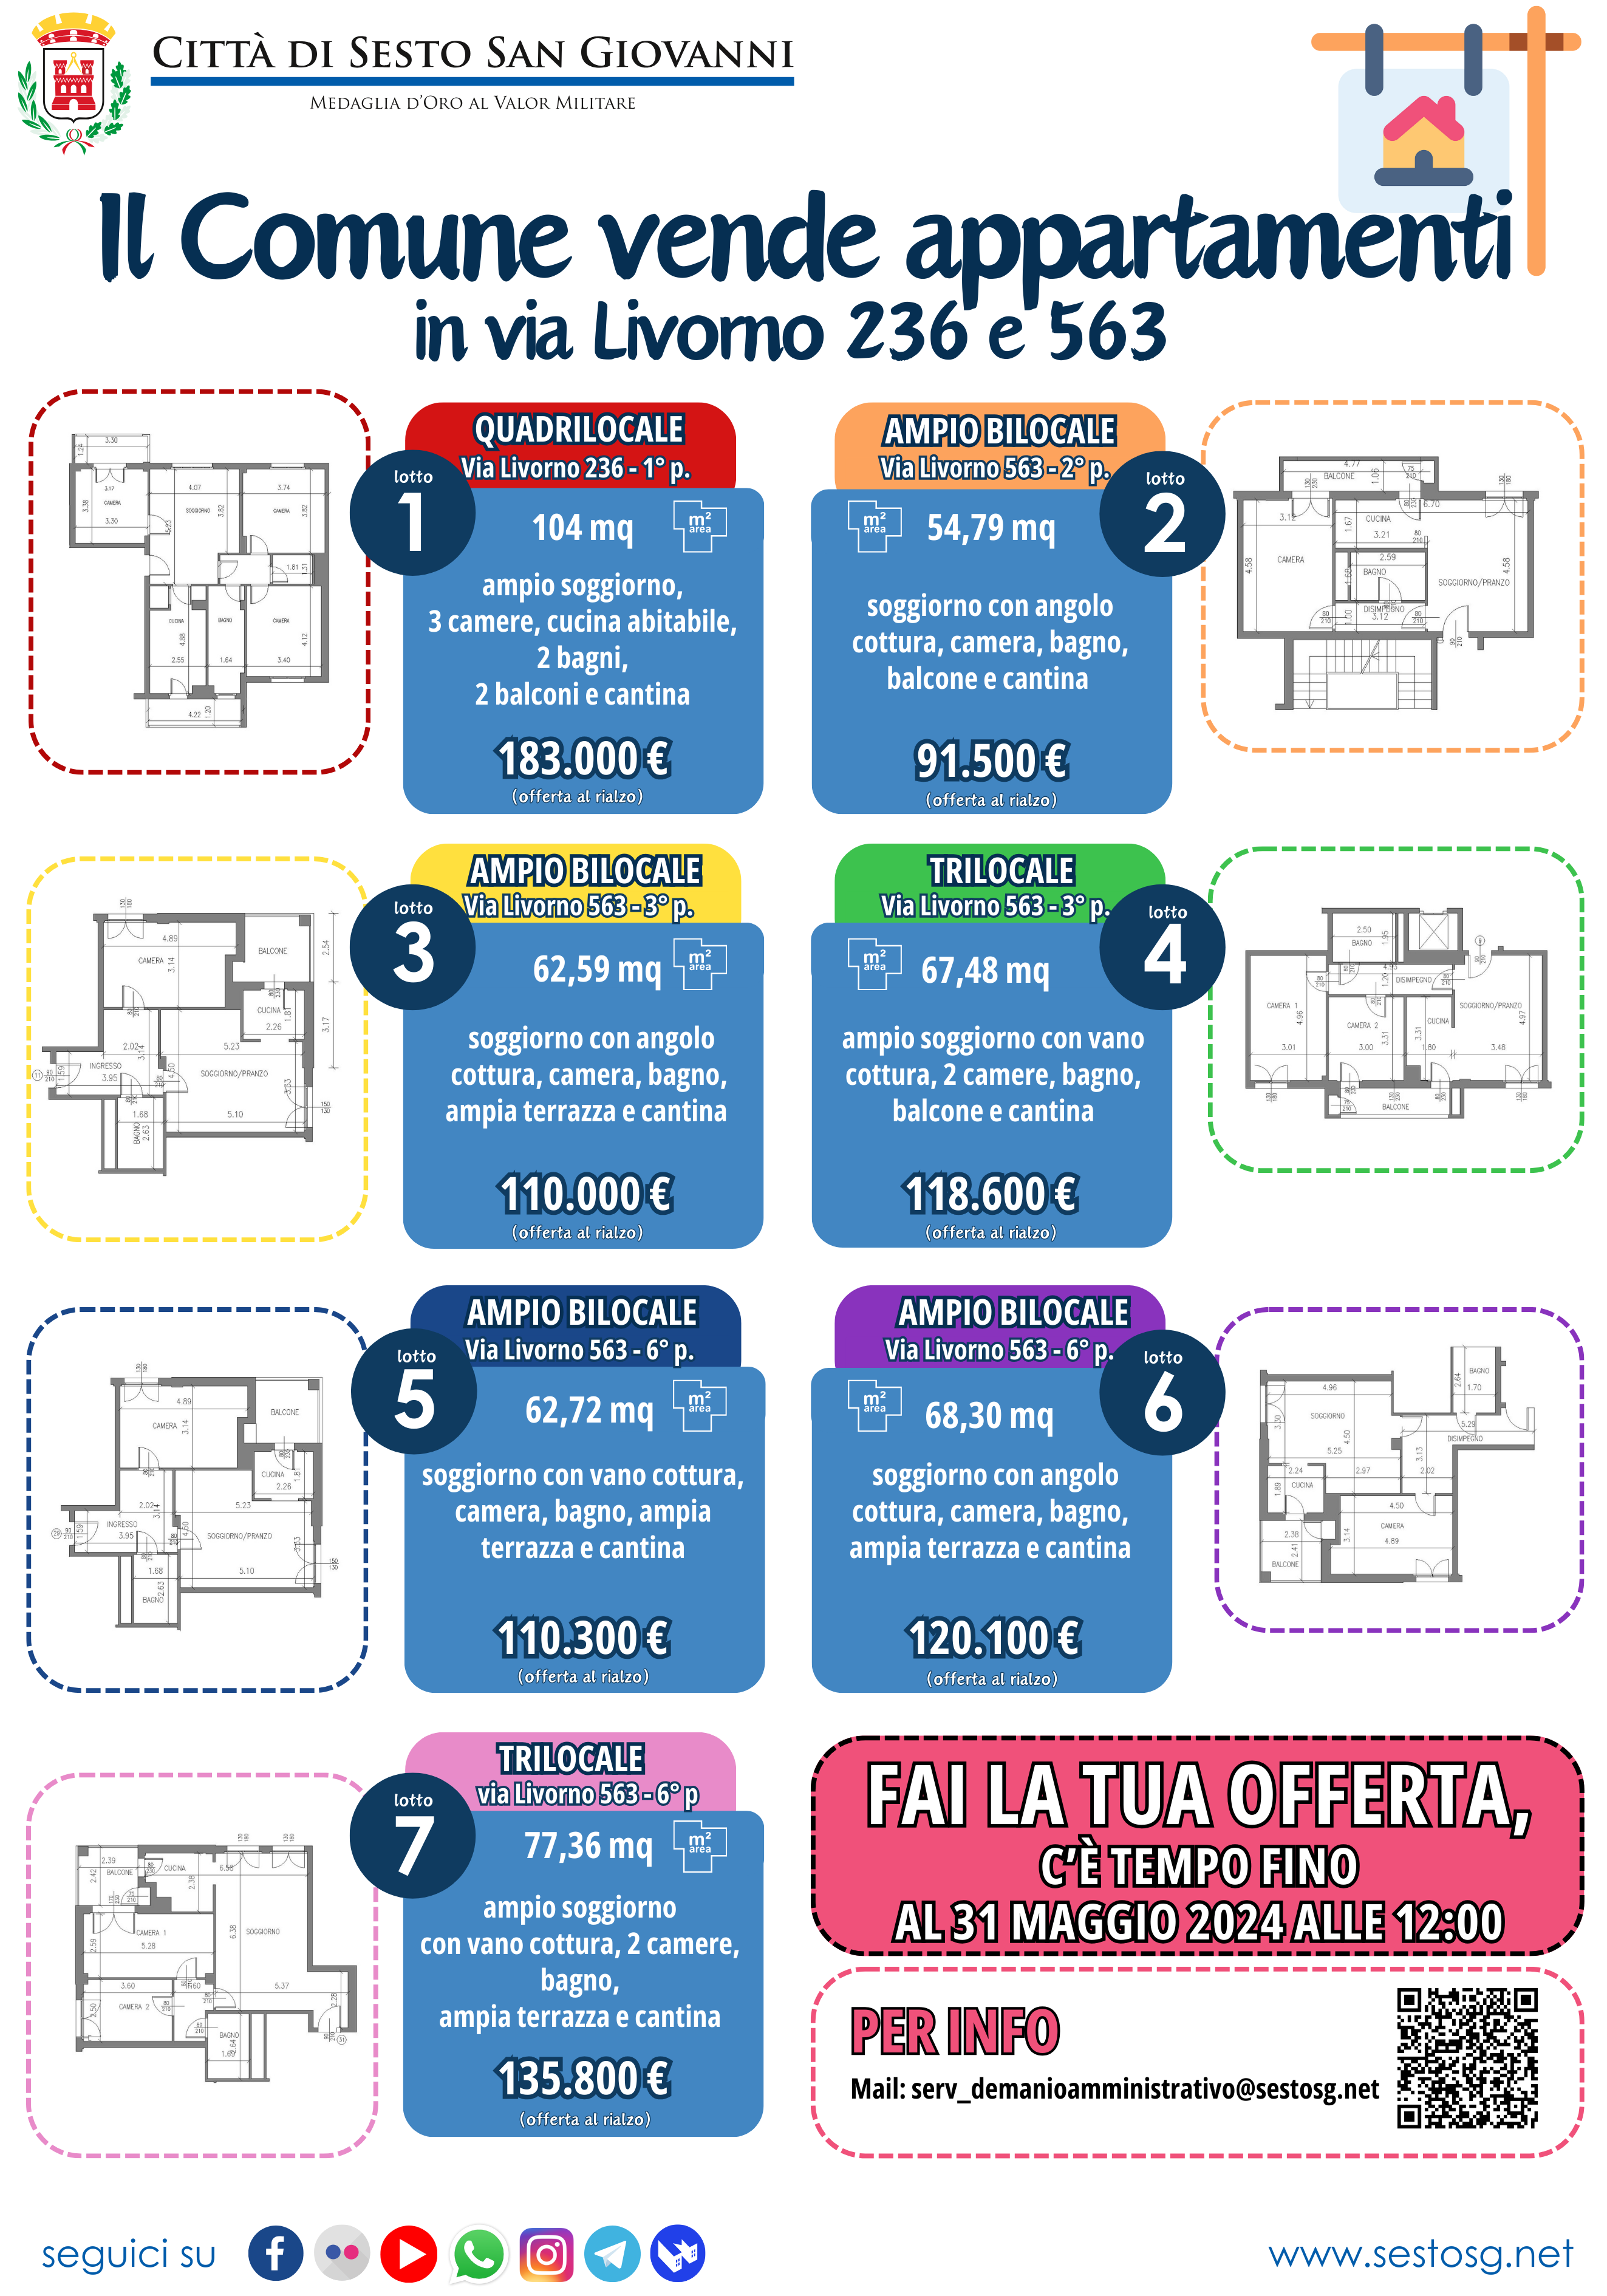 Sette appartamenti in vendita in via Livorno 236 e 563